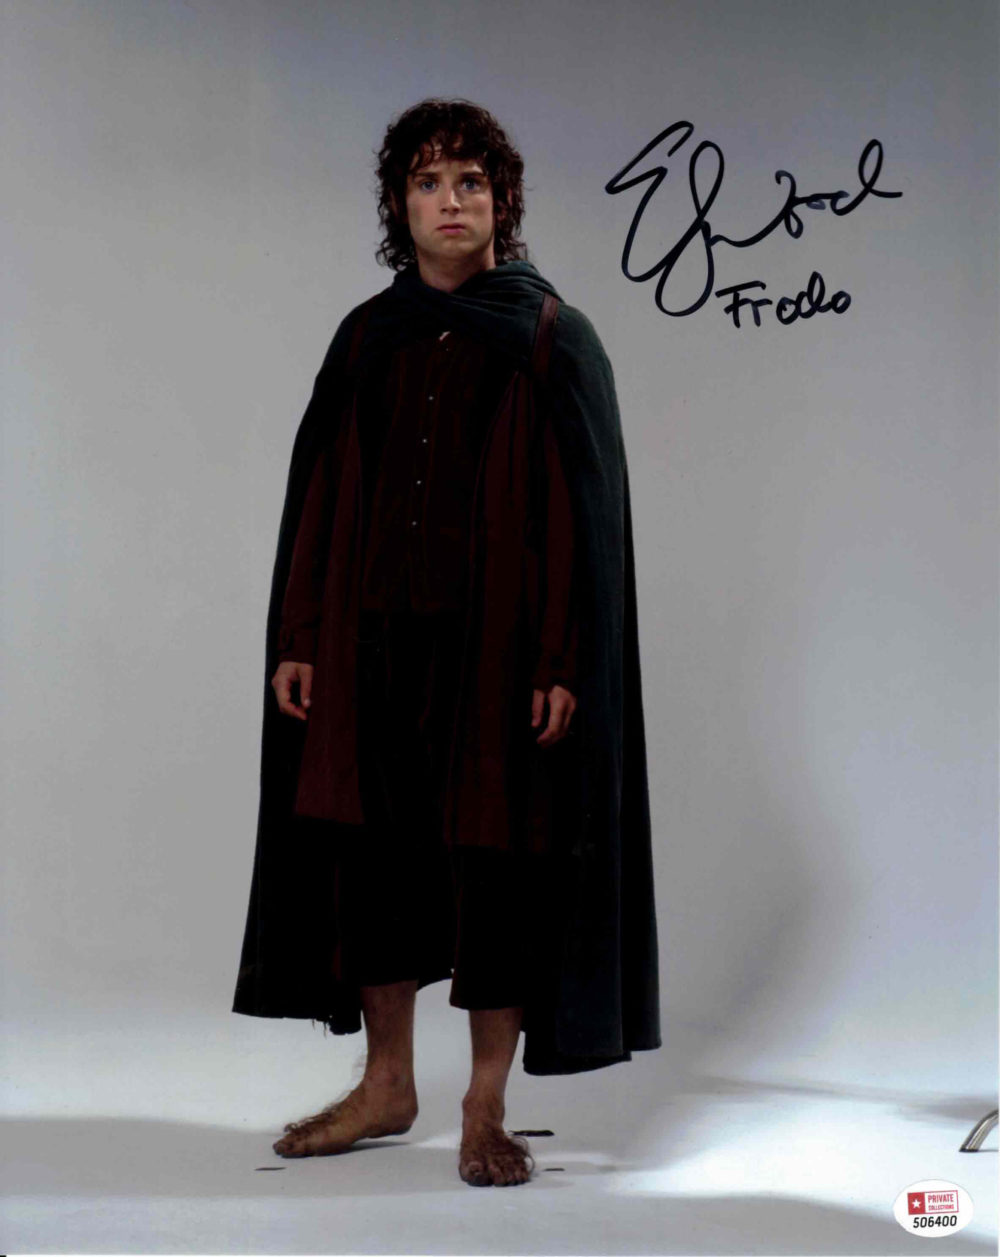 Elijah Wood / Frodo, Pán prstenů - autogram